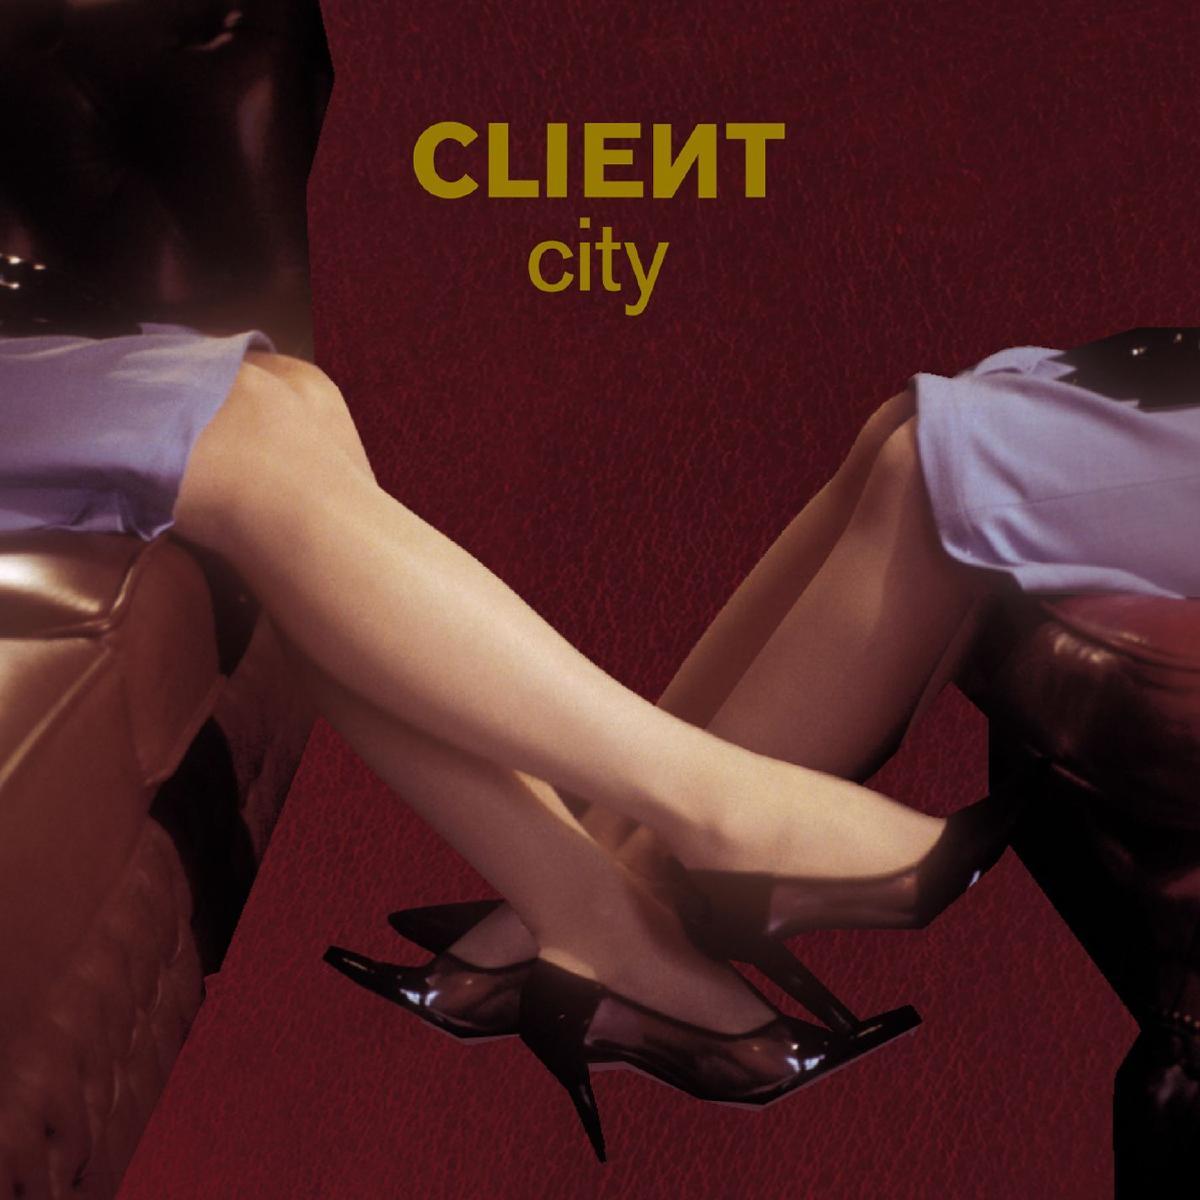 Client - City (2004)